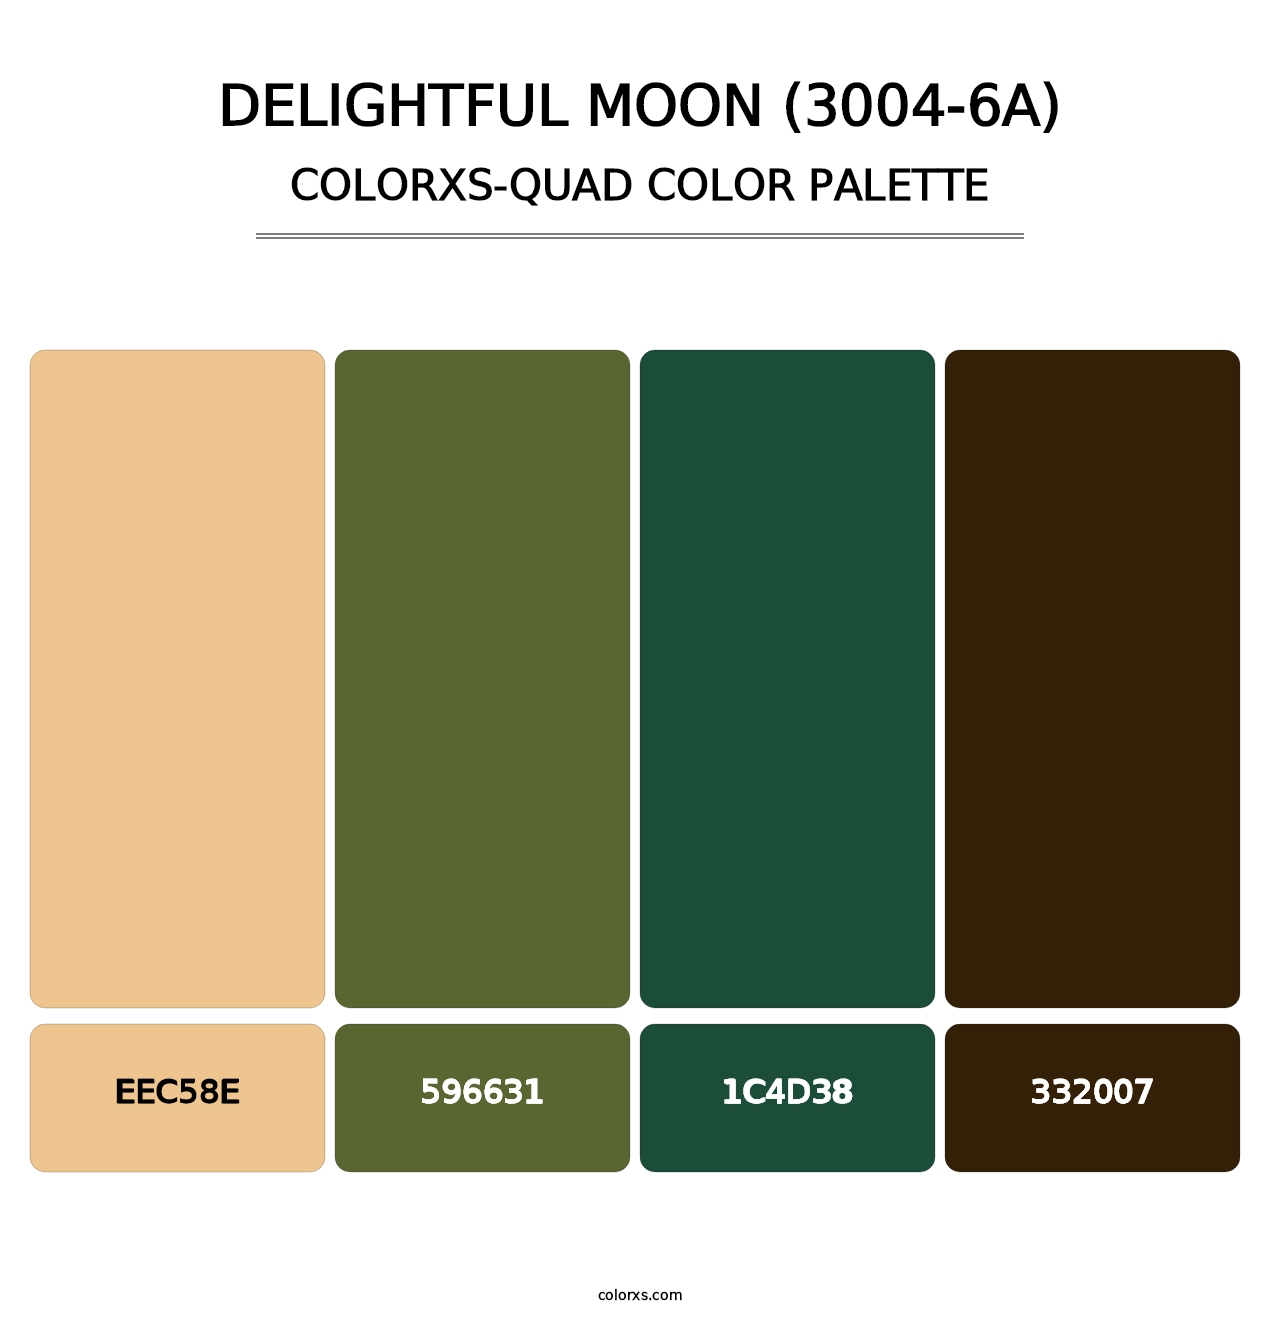 Delightful Moon (3004-6A) - Colorxs Quad Palette